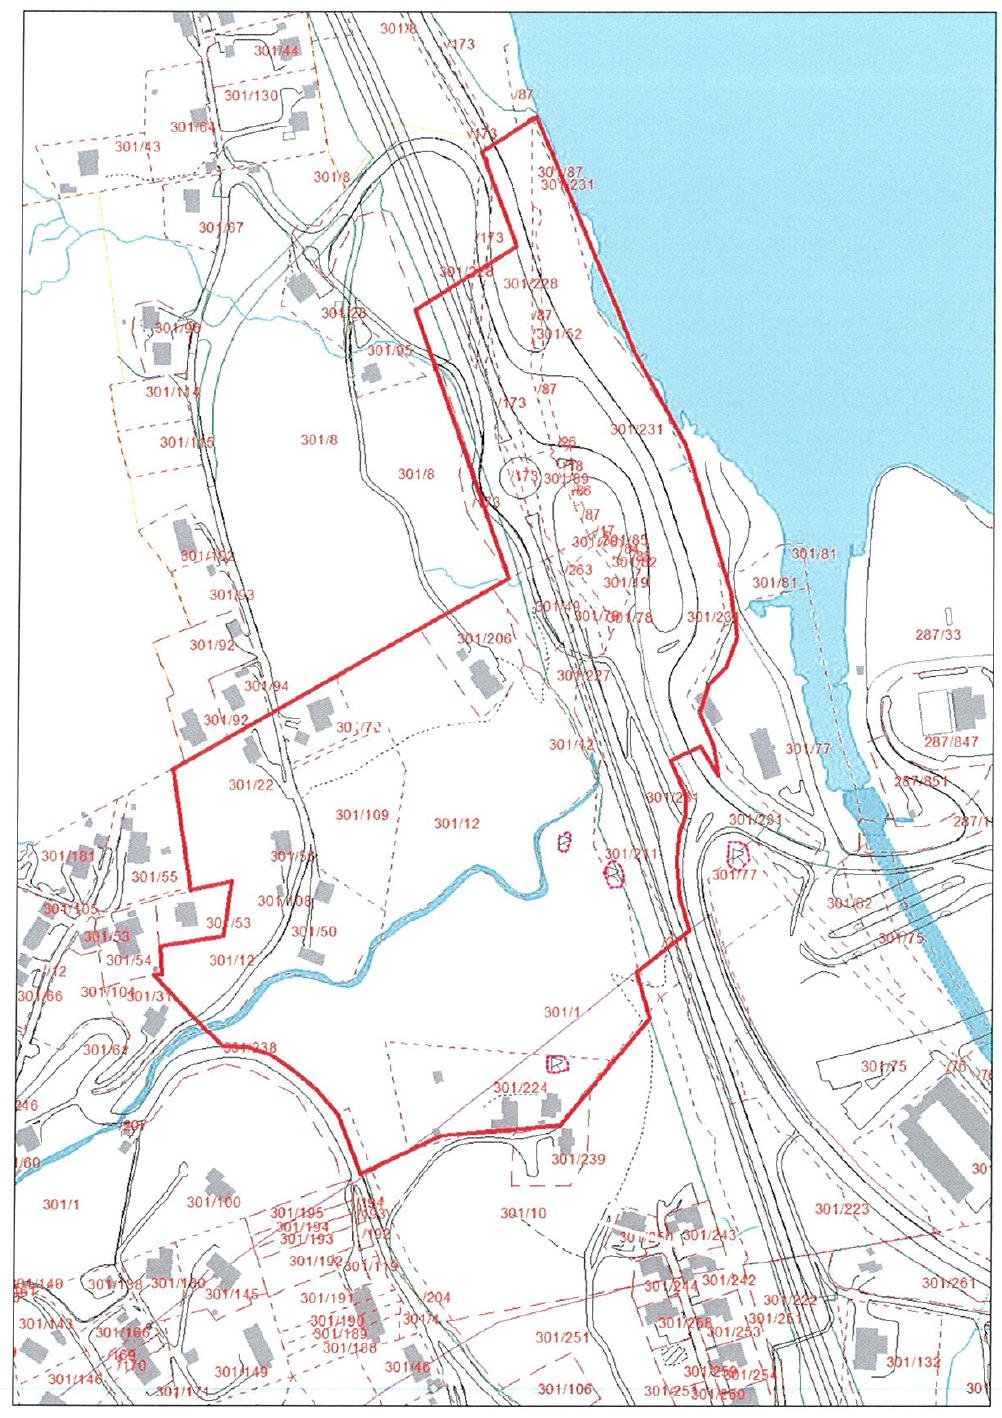 OMRÅDEPLAN VÅRHEIA Det utvidete planområdet i Vårheia ligger sørvest for Arnavågen i Bergen kommune og omfatter et belte på hver side av Mjeldheimselva og